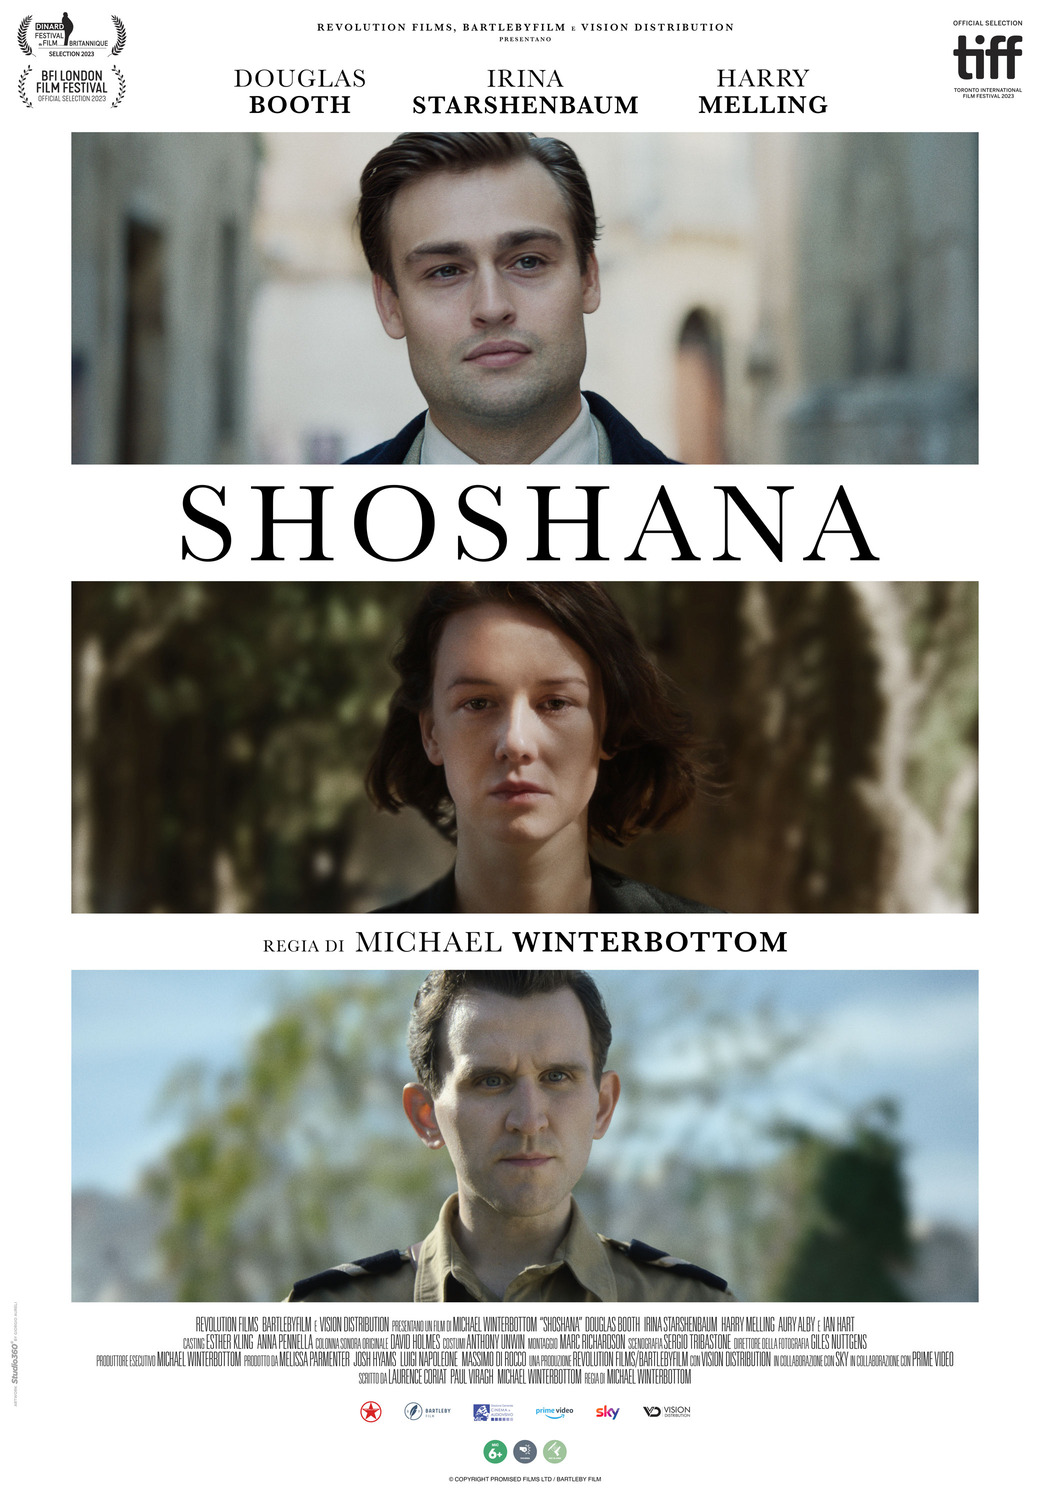 Extra Large Movie Poster Image for Shoshana 